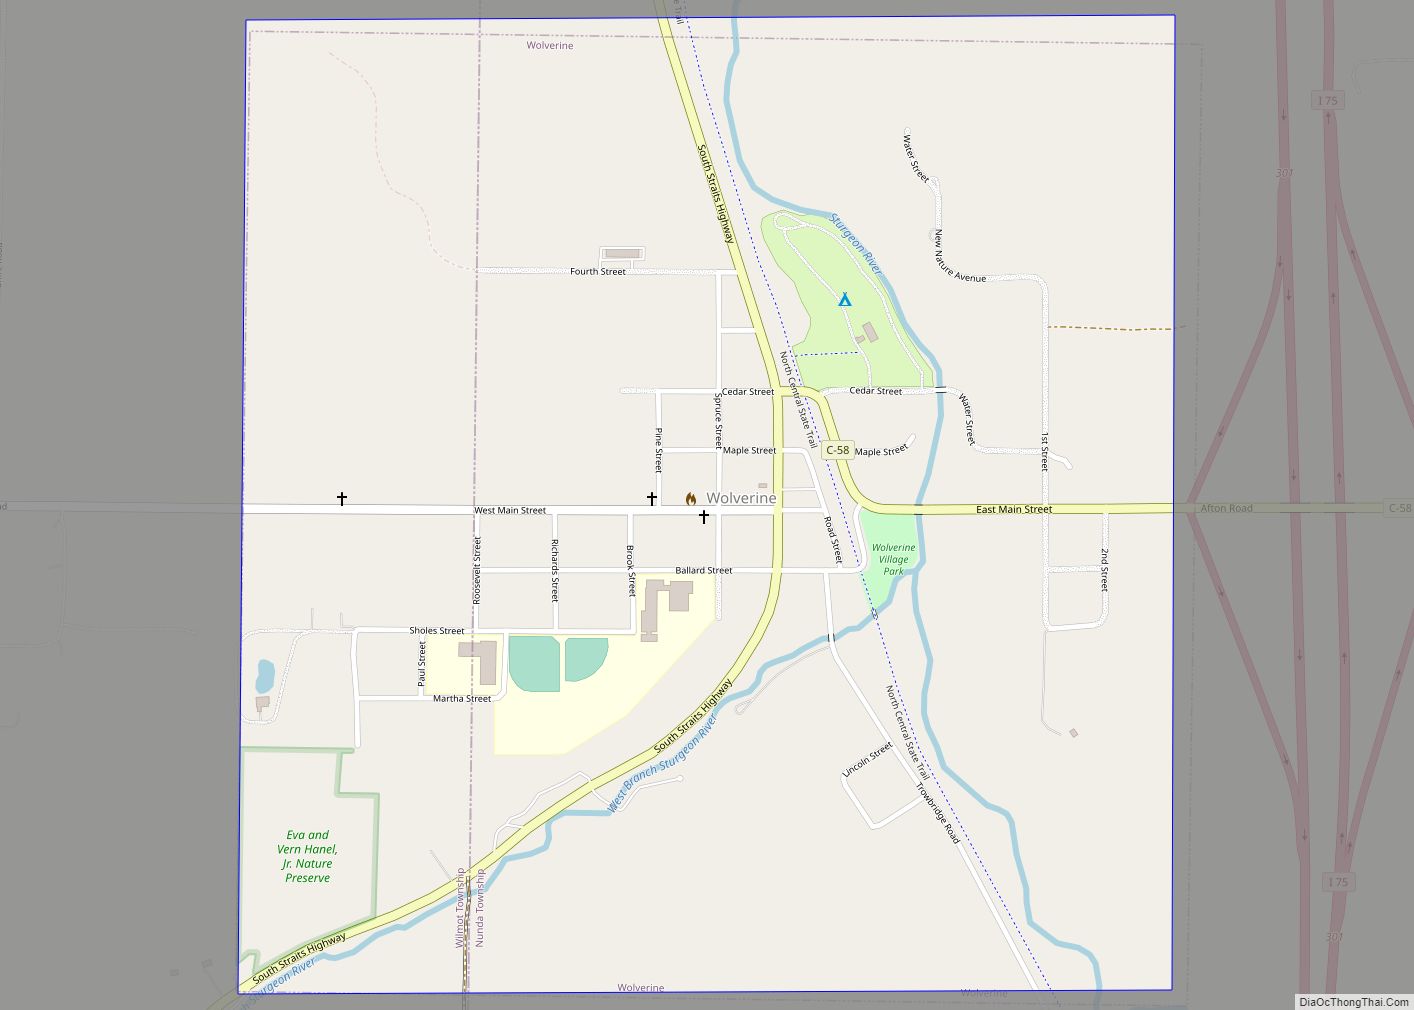 Map of Wolverine village